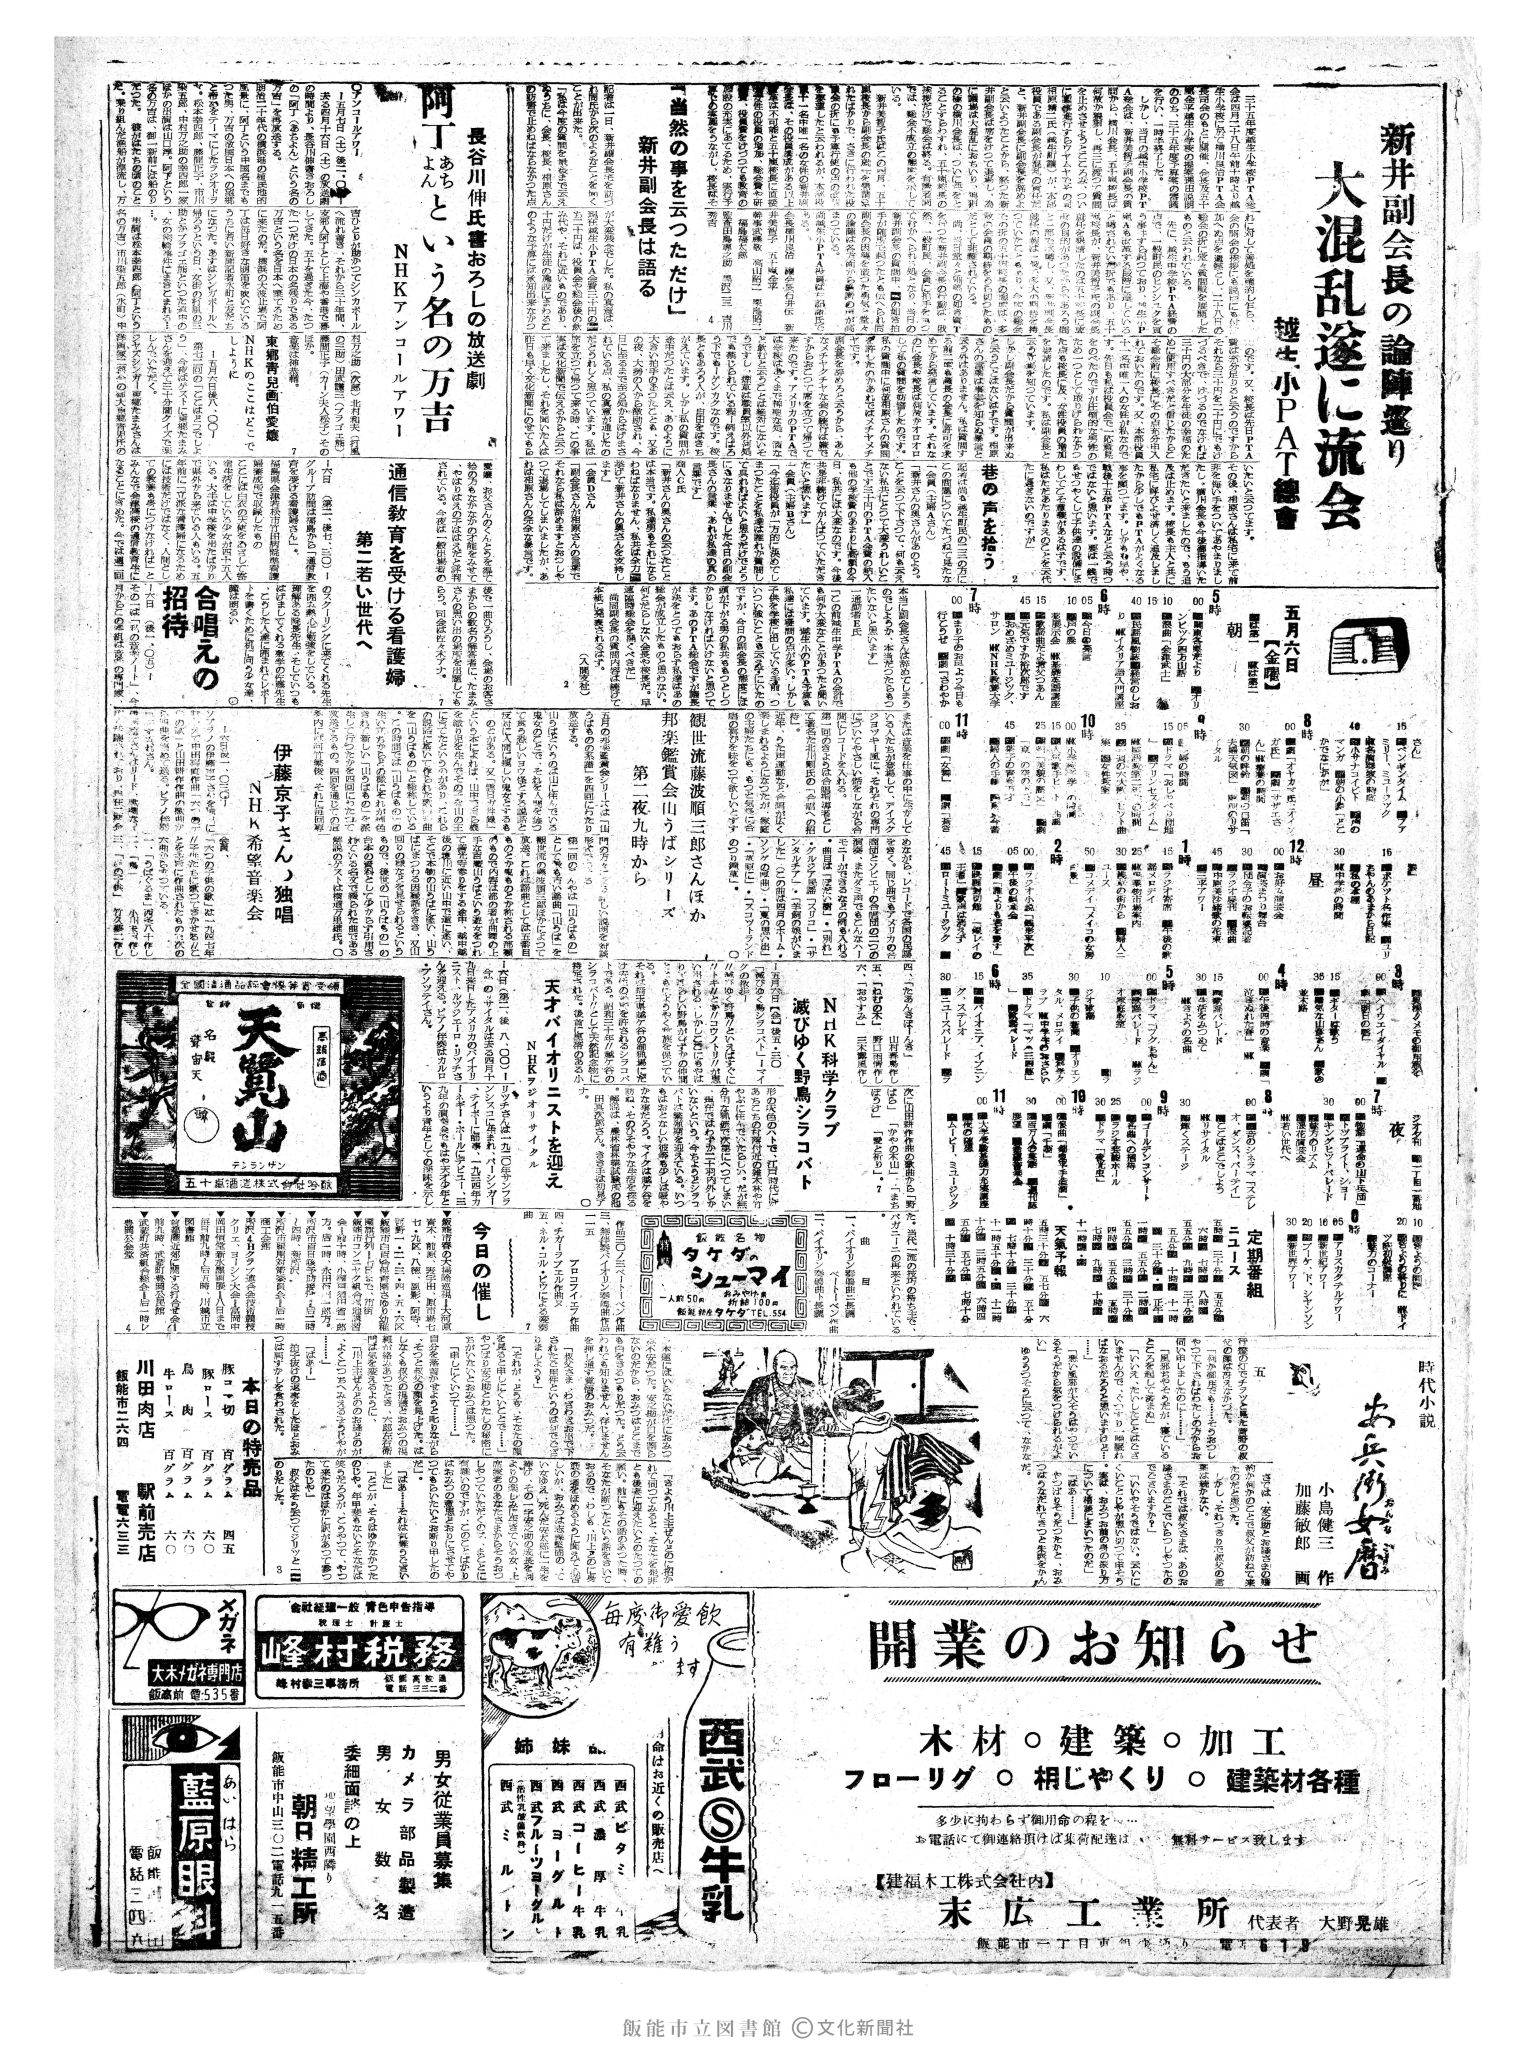 昭和35年5月6日3面 (第3523号) 2ページと同じ内容が印刷されています